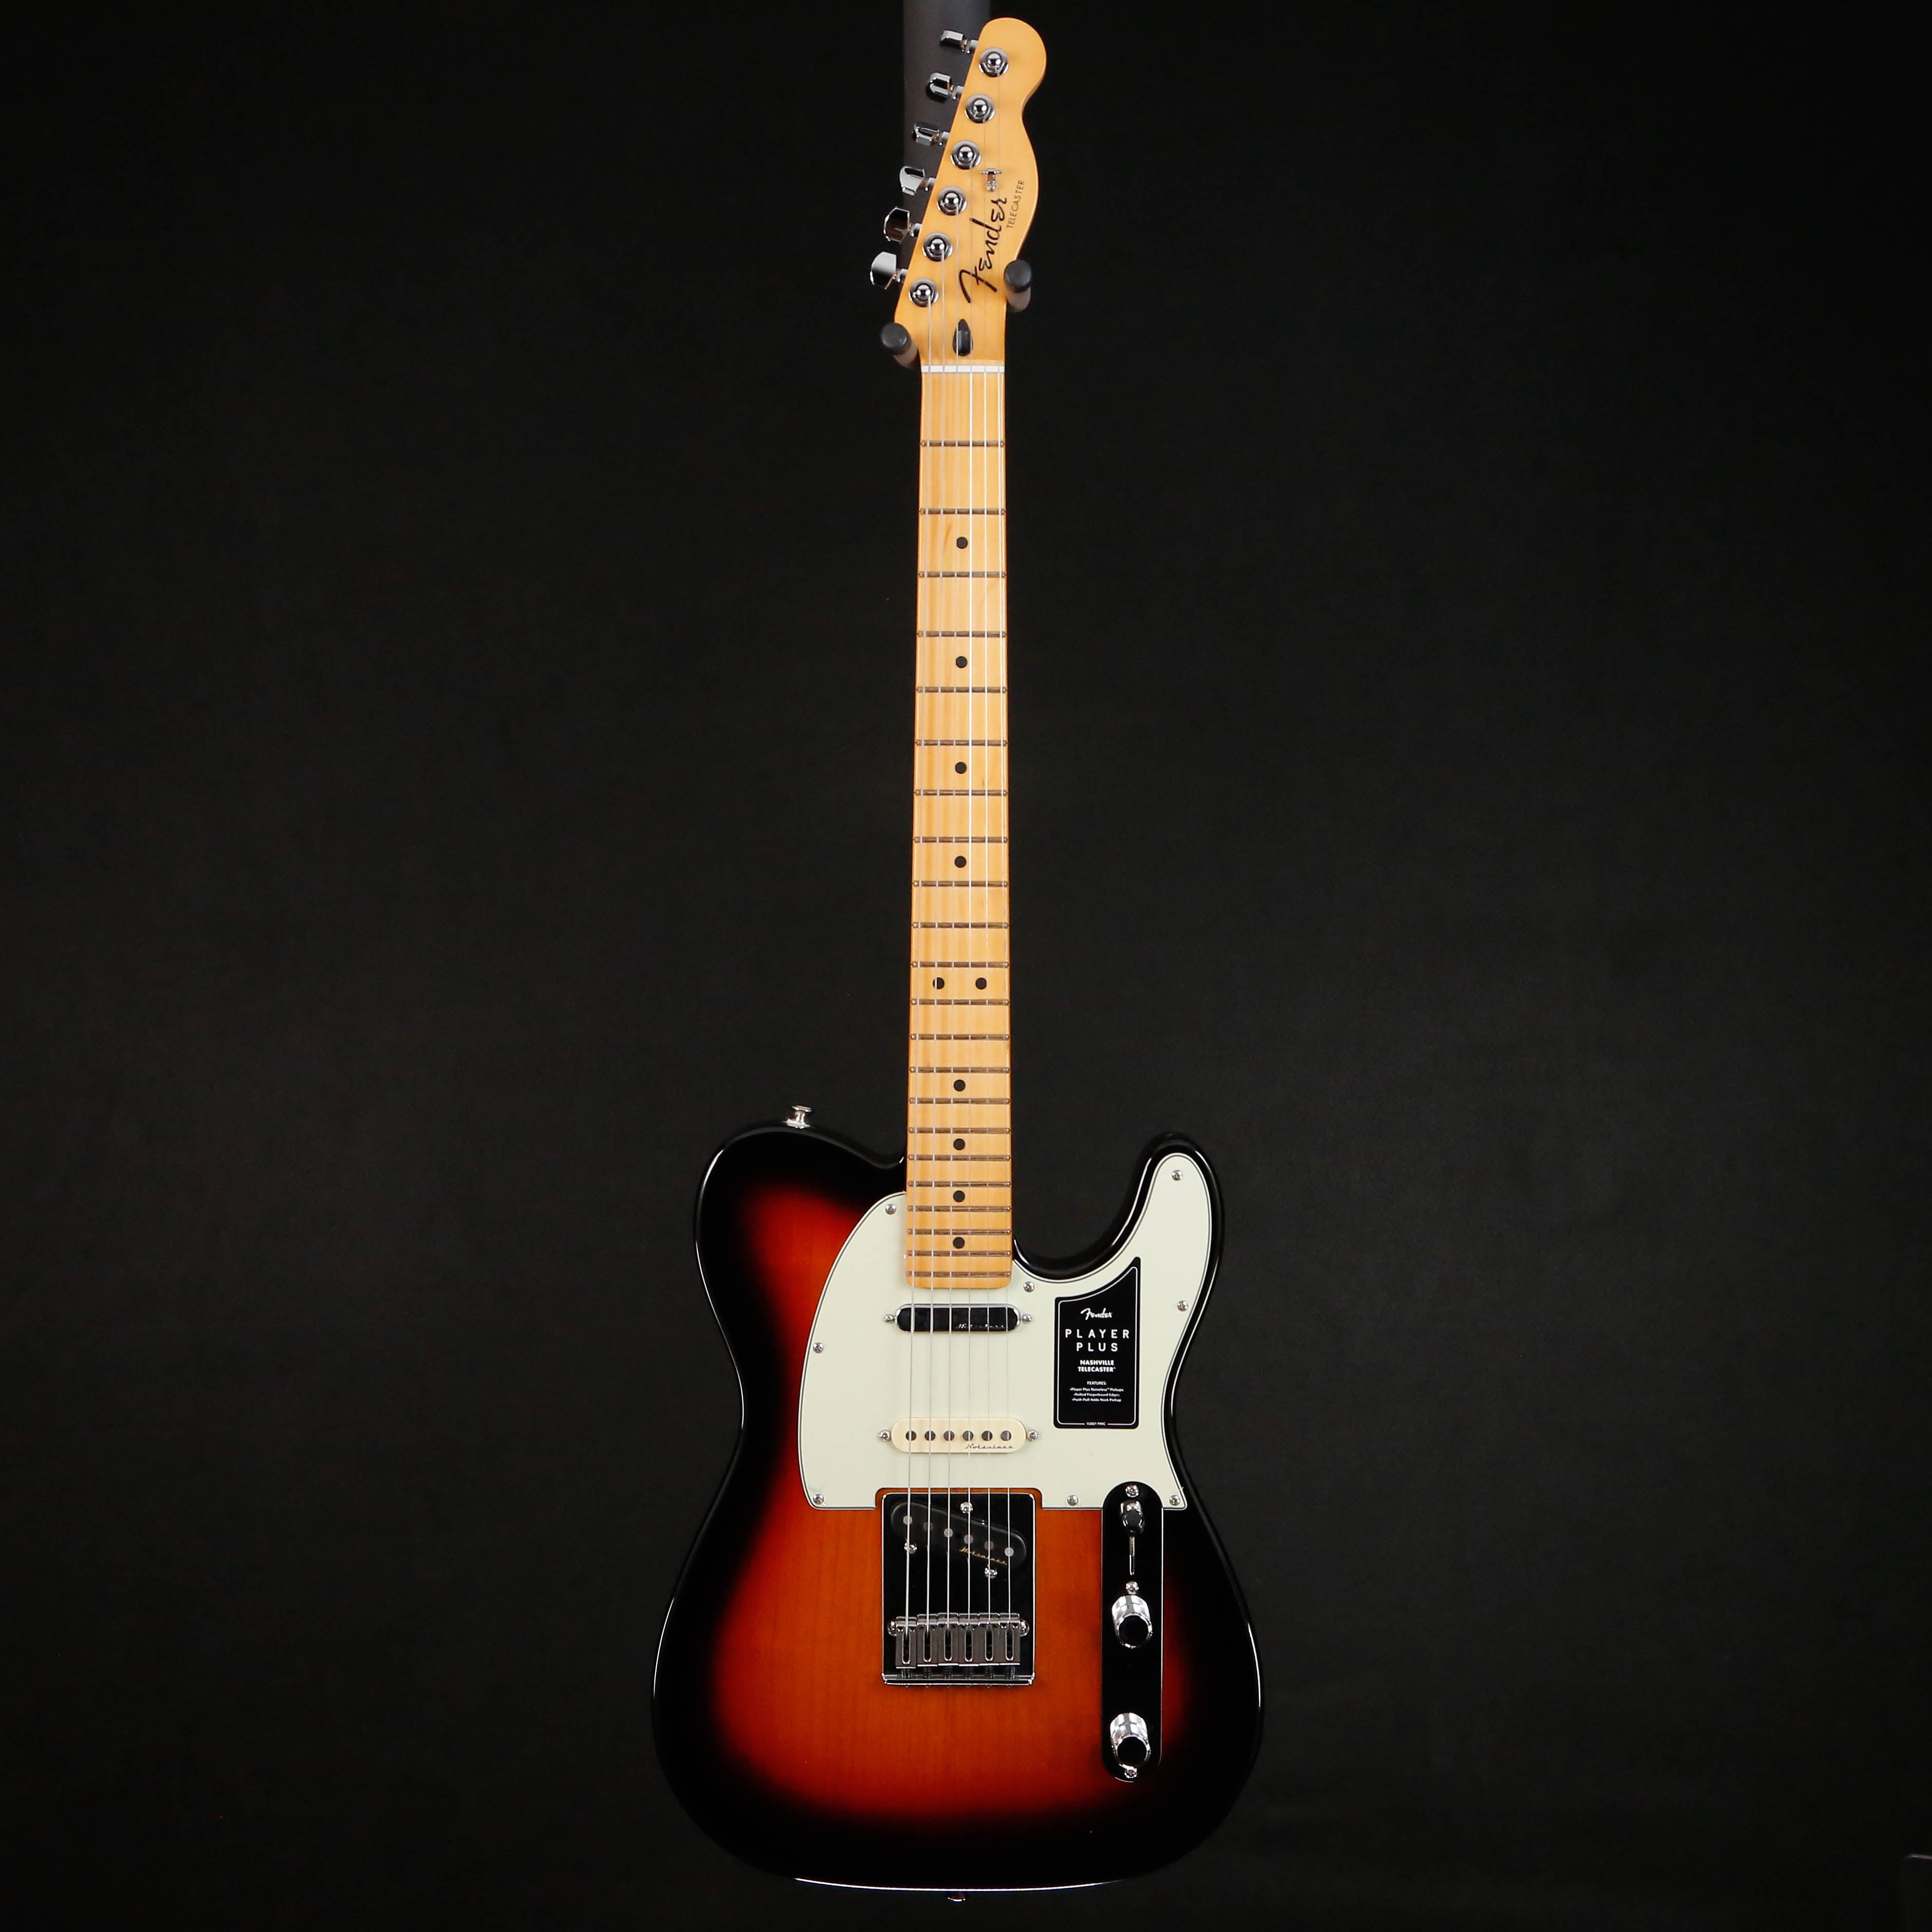 Fender Player Plus Nashville Telecaster, Maple Fingerboard, 3-Color Sunburst